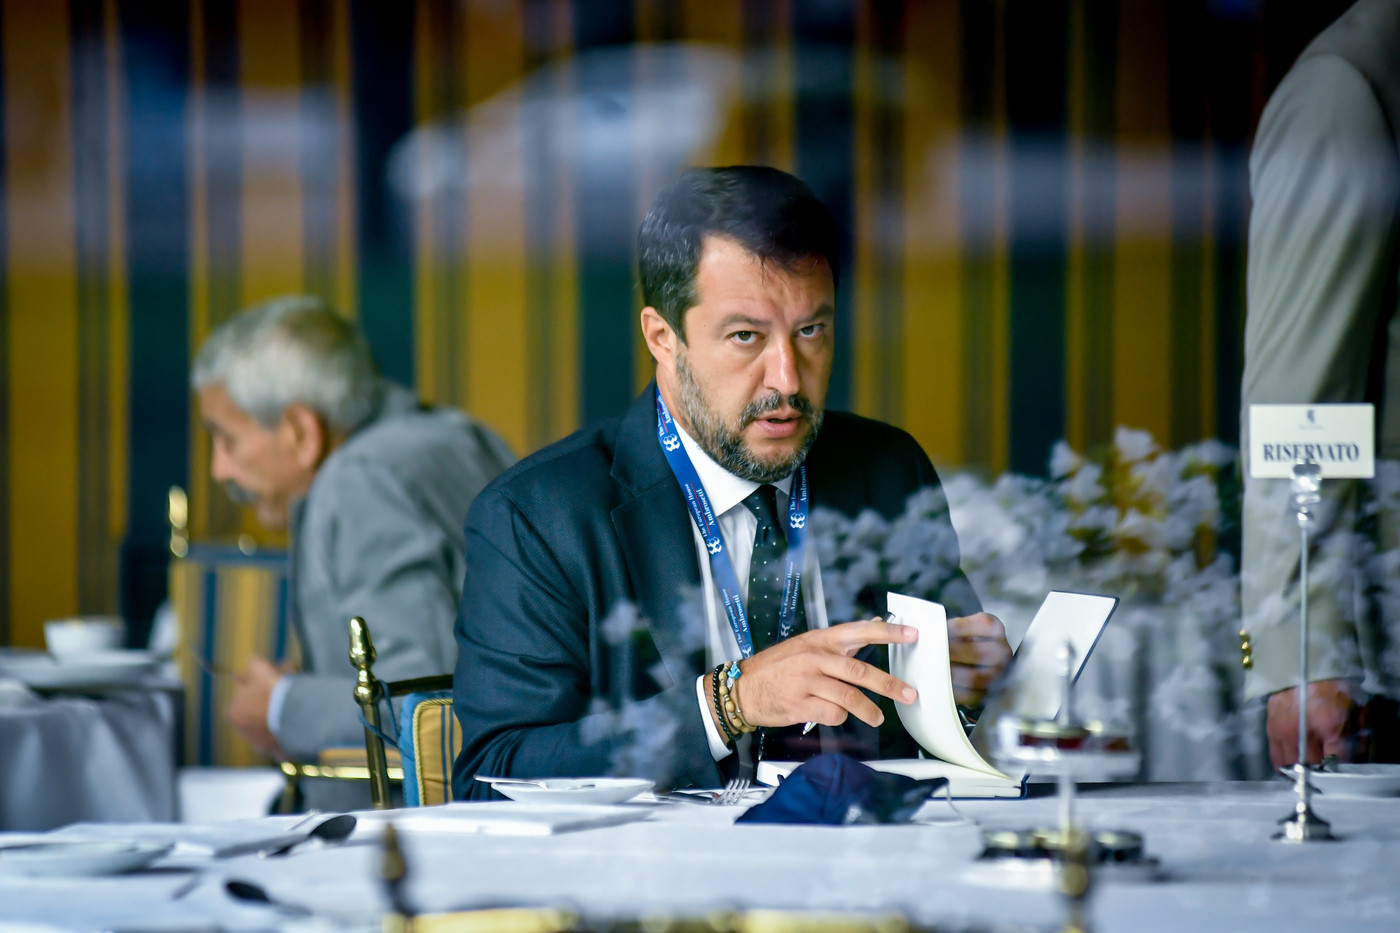 Posta selfie “Salvini appeso”: polemica sul candidato Pd a Venaria